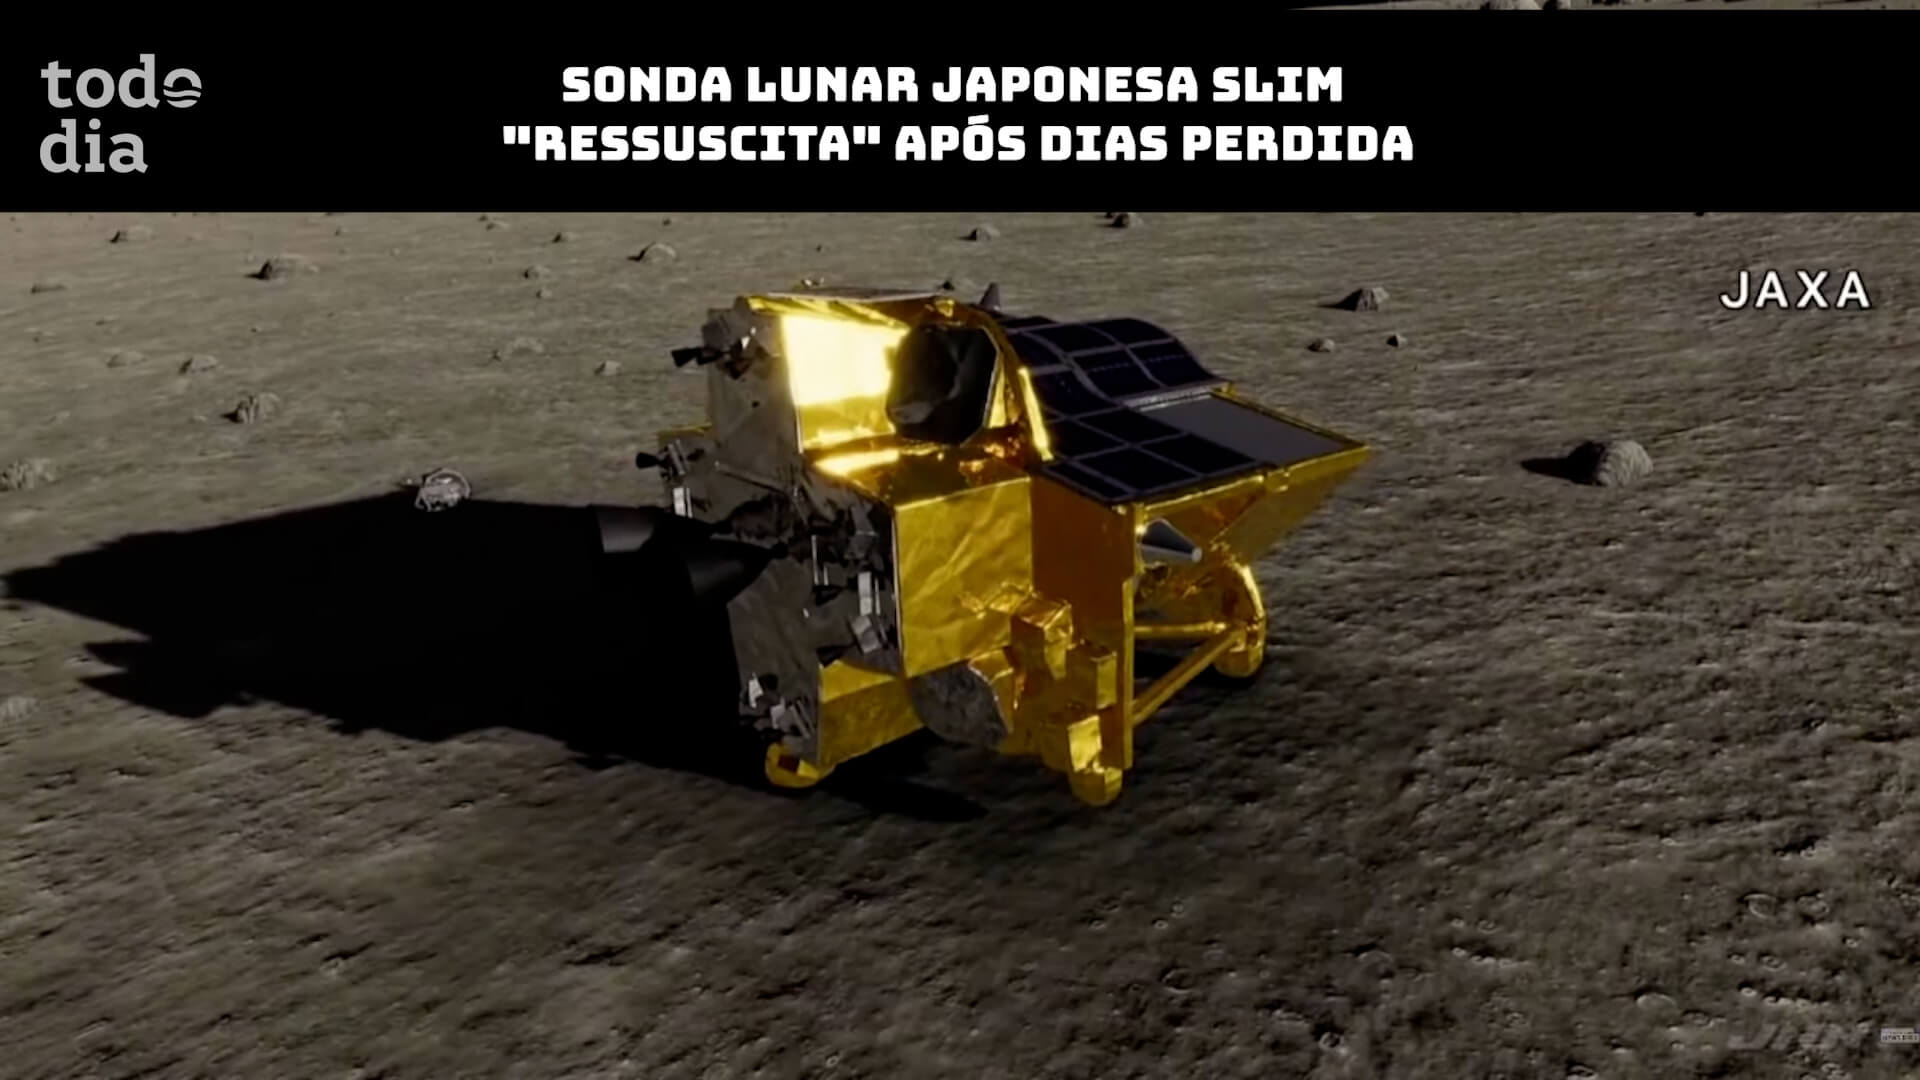 Sonda lunar japonesa SLIM “ressuscita” após dias perdida